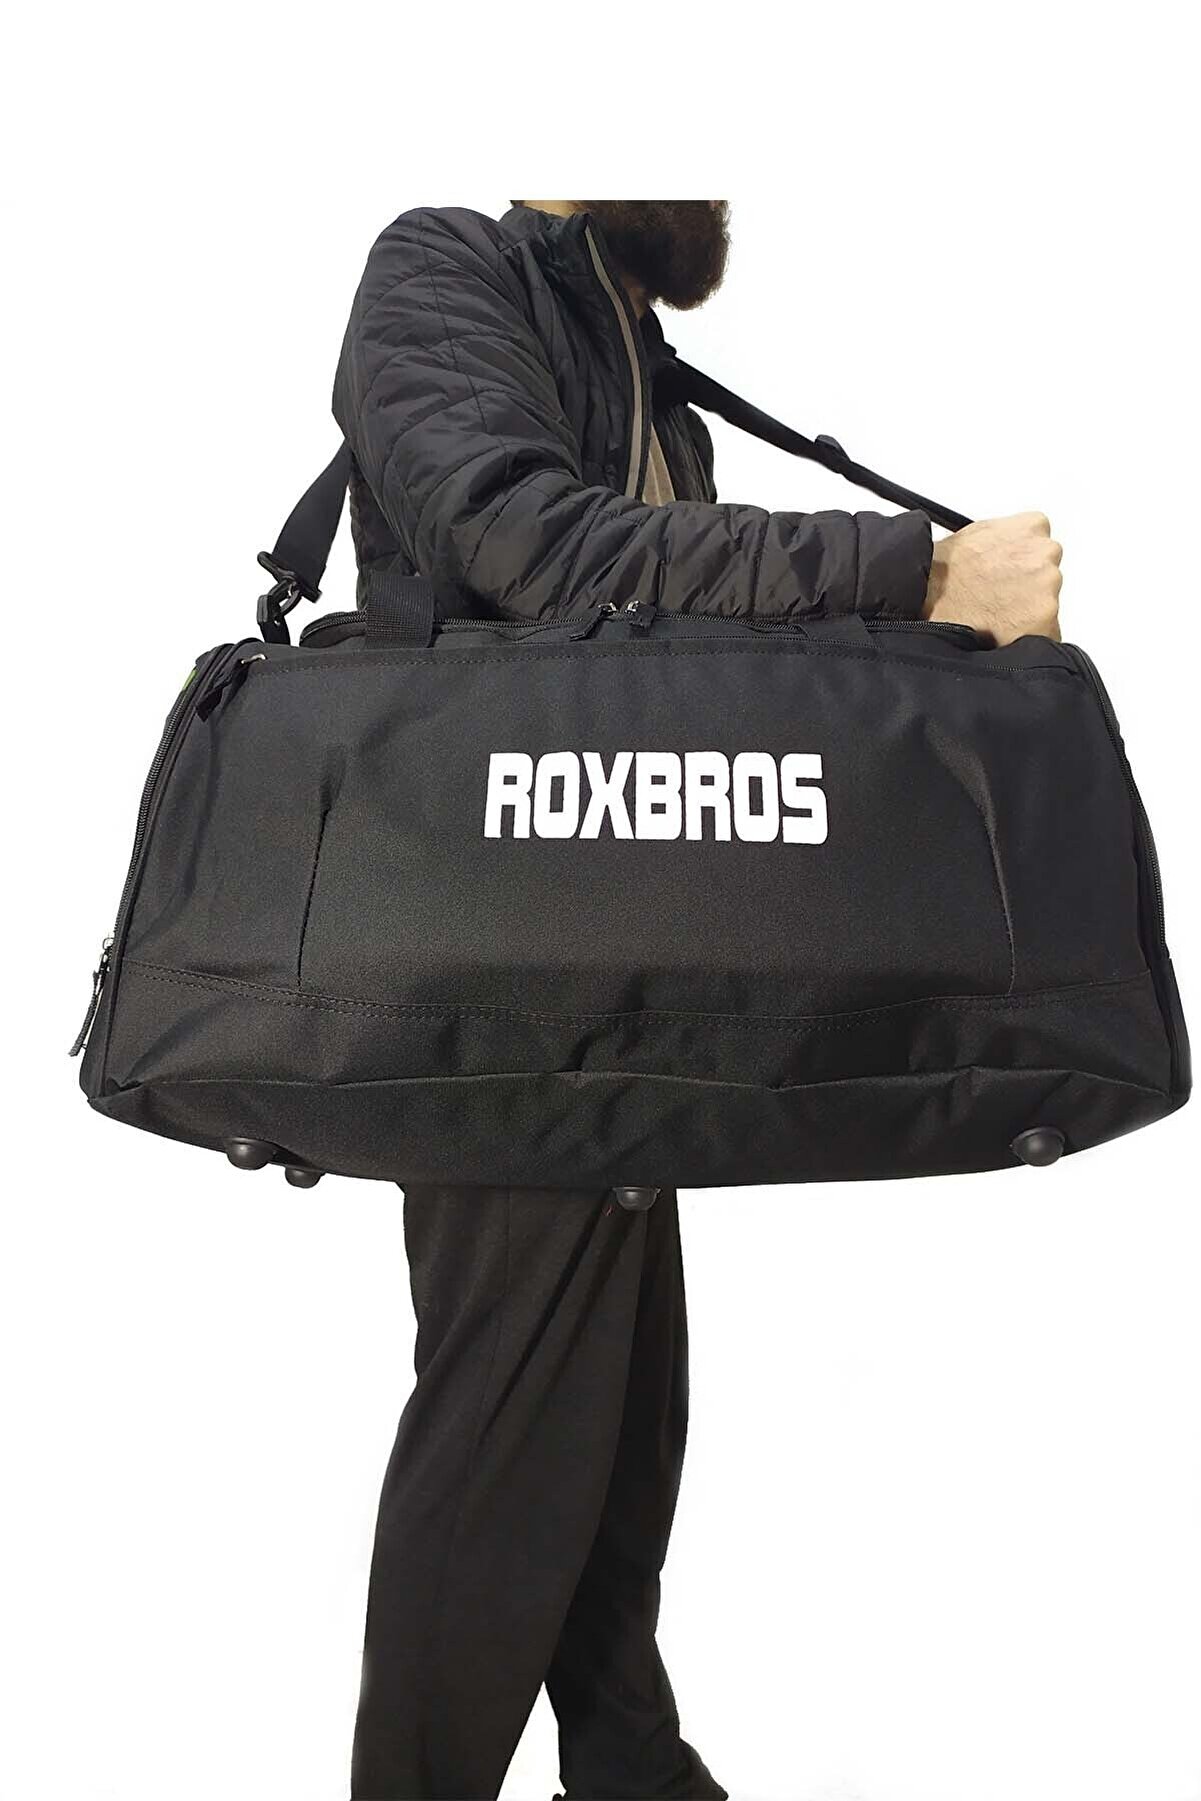 Roxbros 62 Cm Büyük Boy Seyahat Çantası Spor Çanta Adidas Nike Model